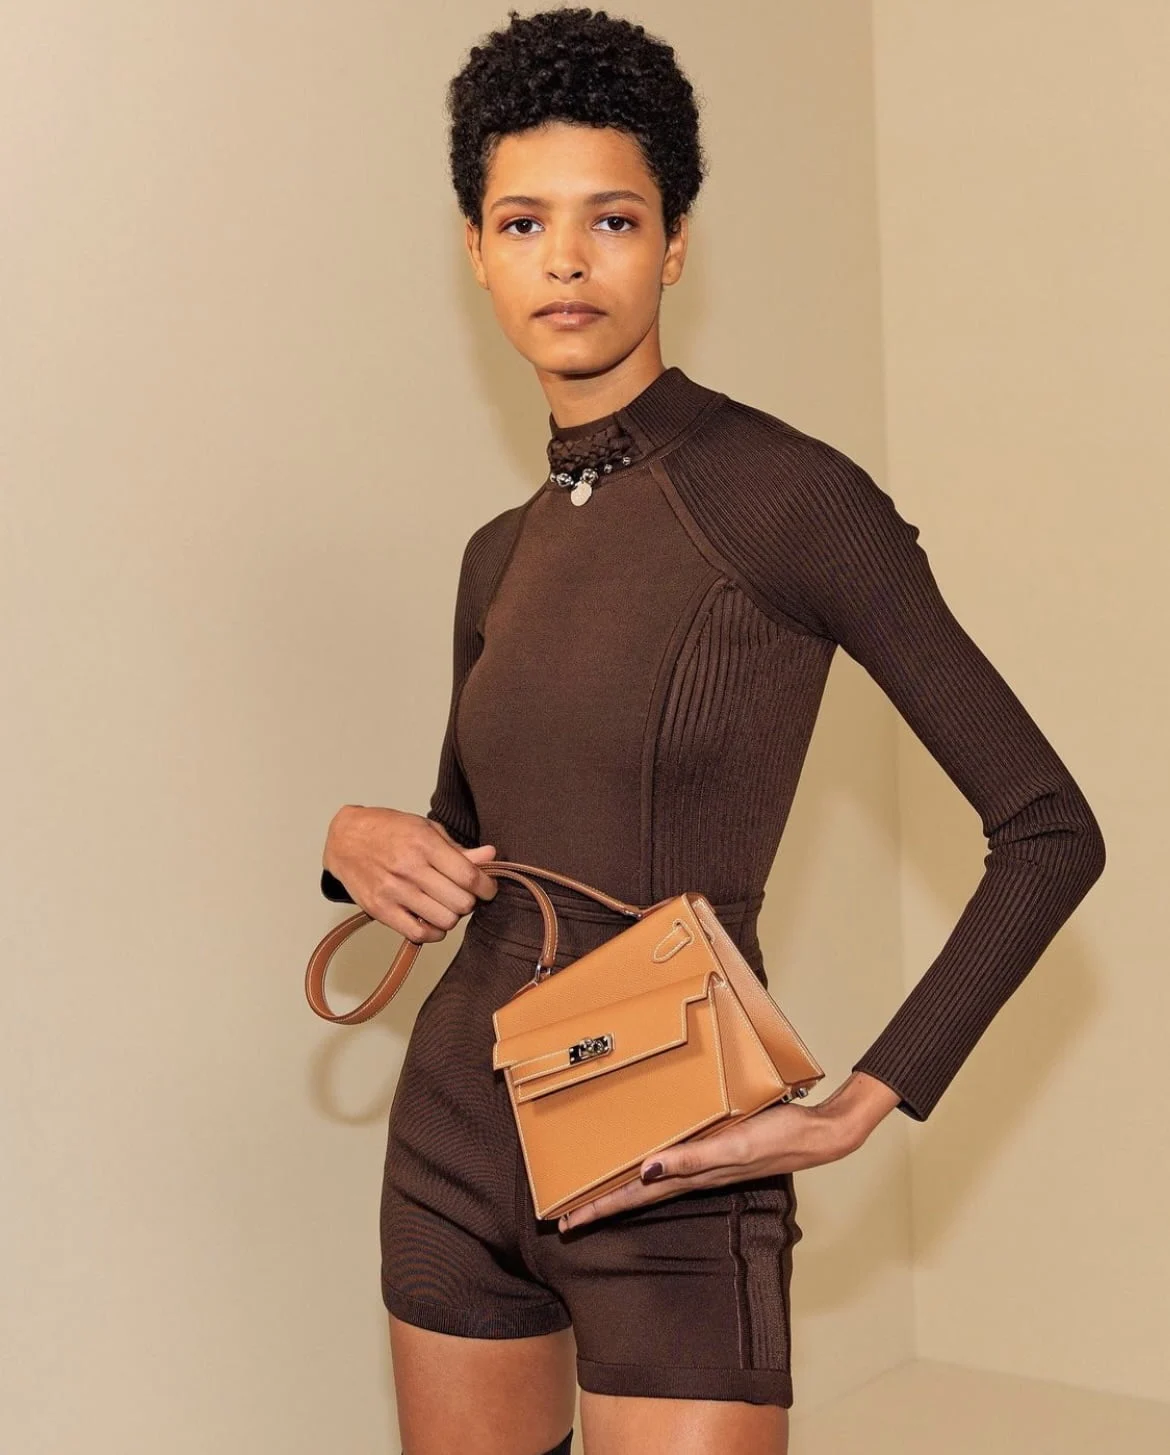 Designer Kelly 25cm Bag Ostrich Shoulder Bag -Nadine Collections